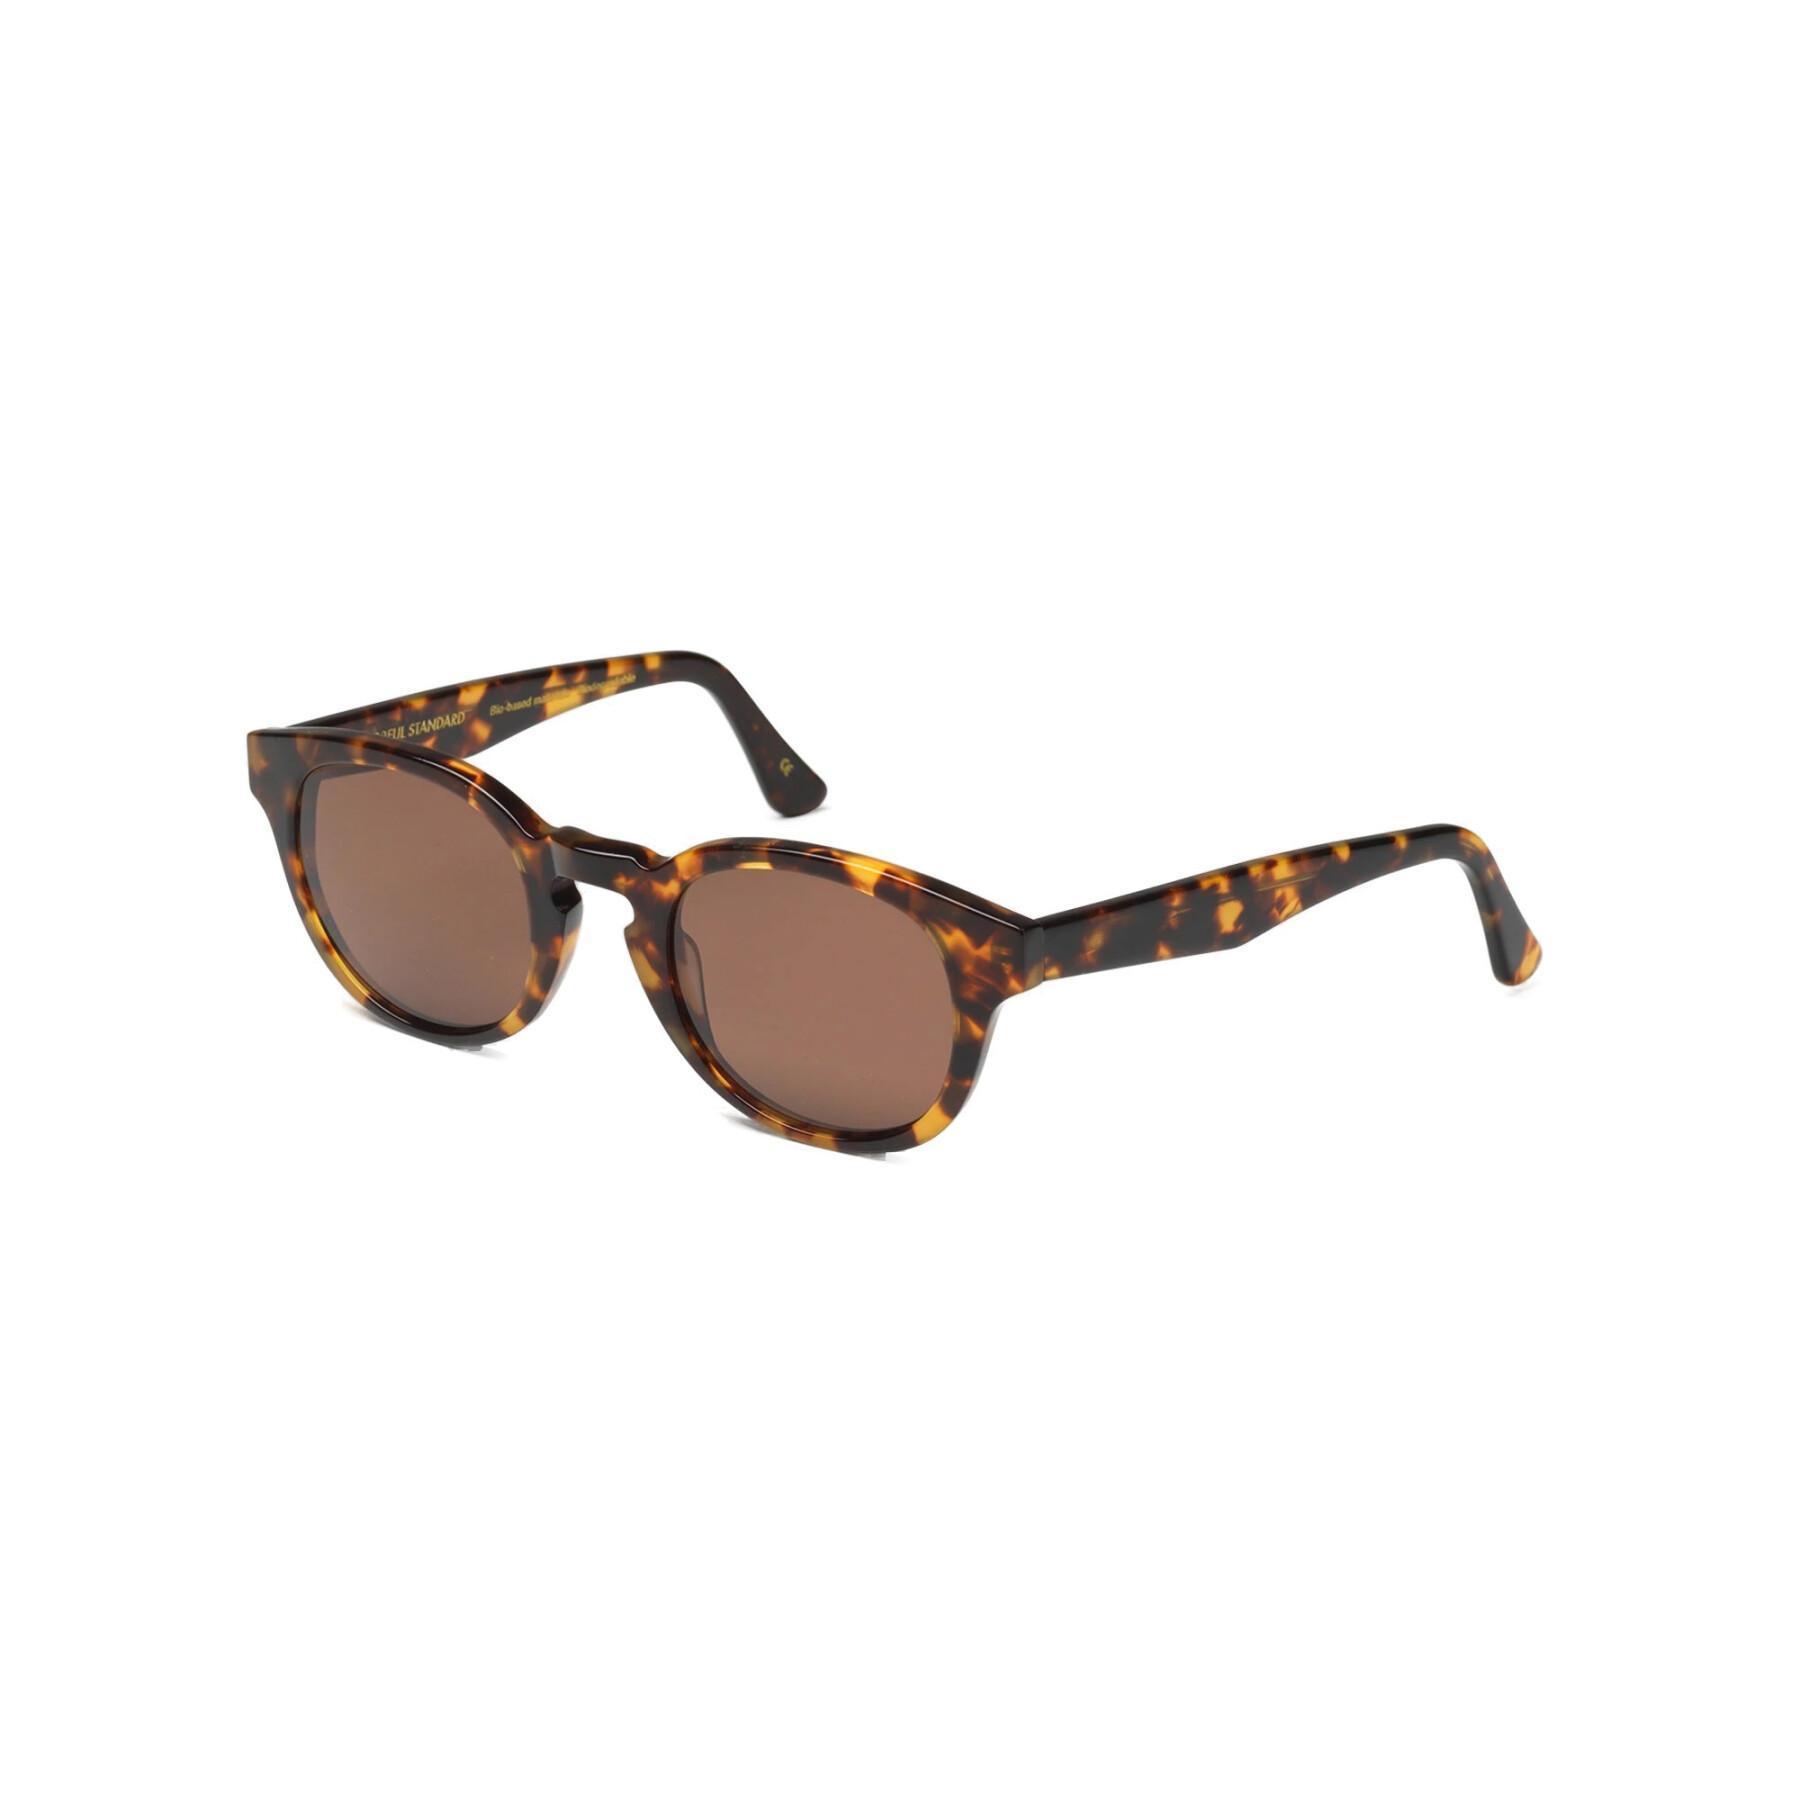 Okulary przeciwsłoneczne Colorful Standard 12 classic havana/brown